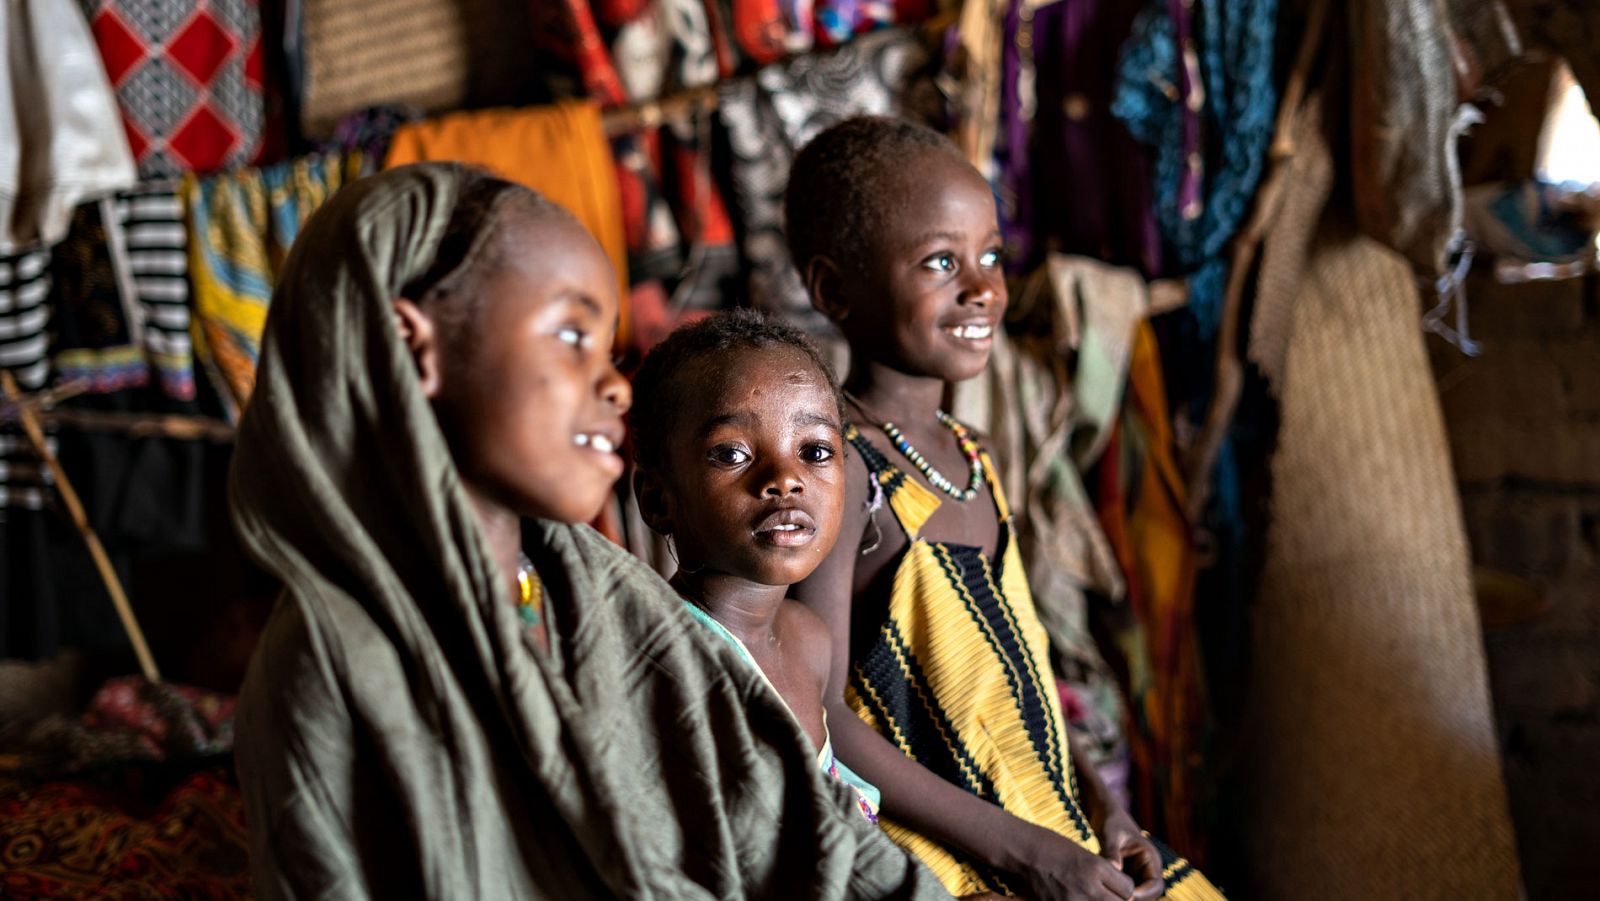 Silenciados - La lucha contra el sarampión en Chad: "A pesar de las vacunaciones masivas, no se ha acabado con los brotes"